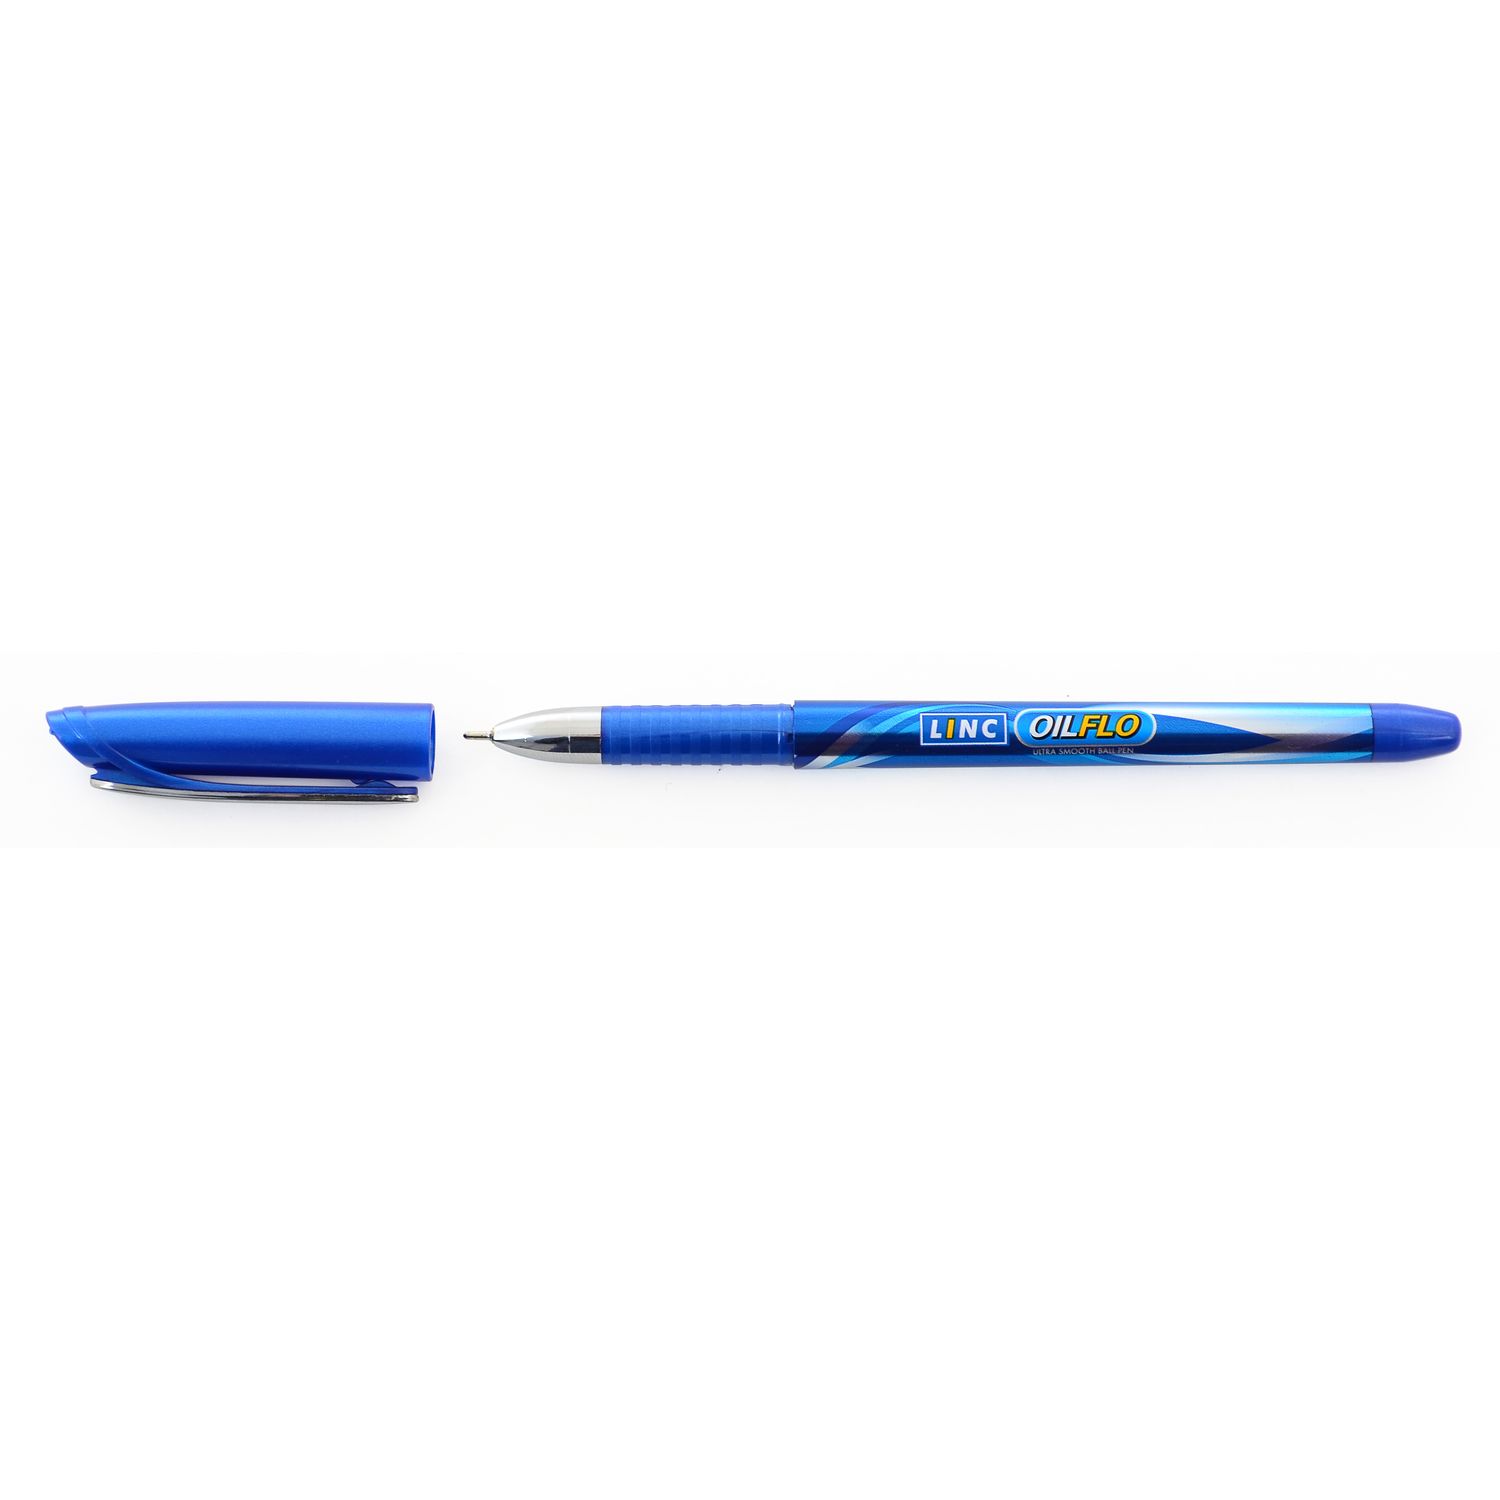 Ручка шариковая Linc Oilflo чернила синие упаковка 12 шт. (411720) - фото 1